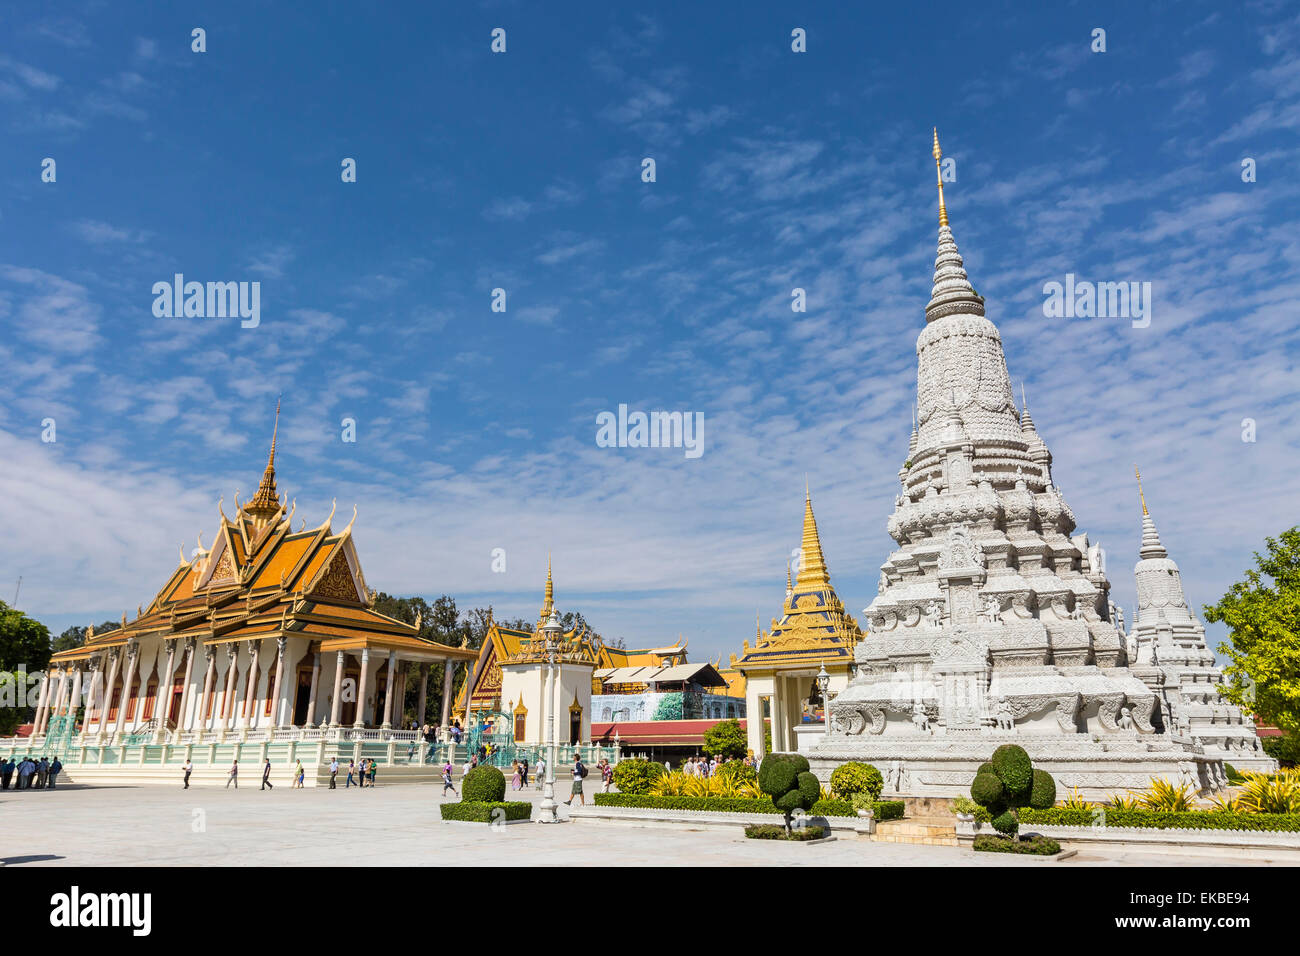 La Pagode d'argent (Wat Preah Keo) dans la capitale de Phnom Penh, Cambodge, Indochine, Asie du Sud, Asie Banque D'Images